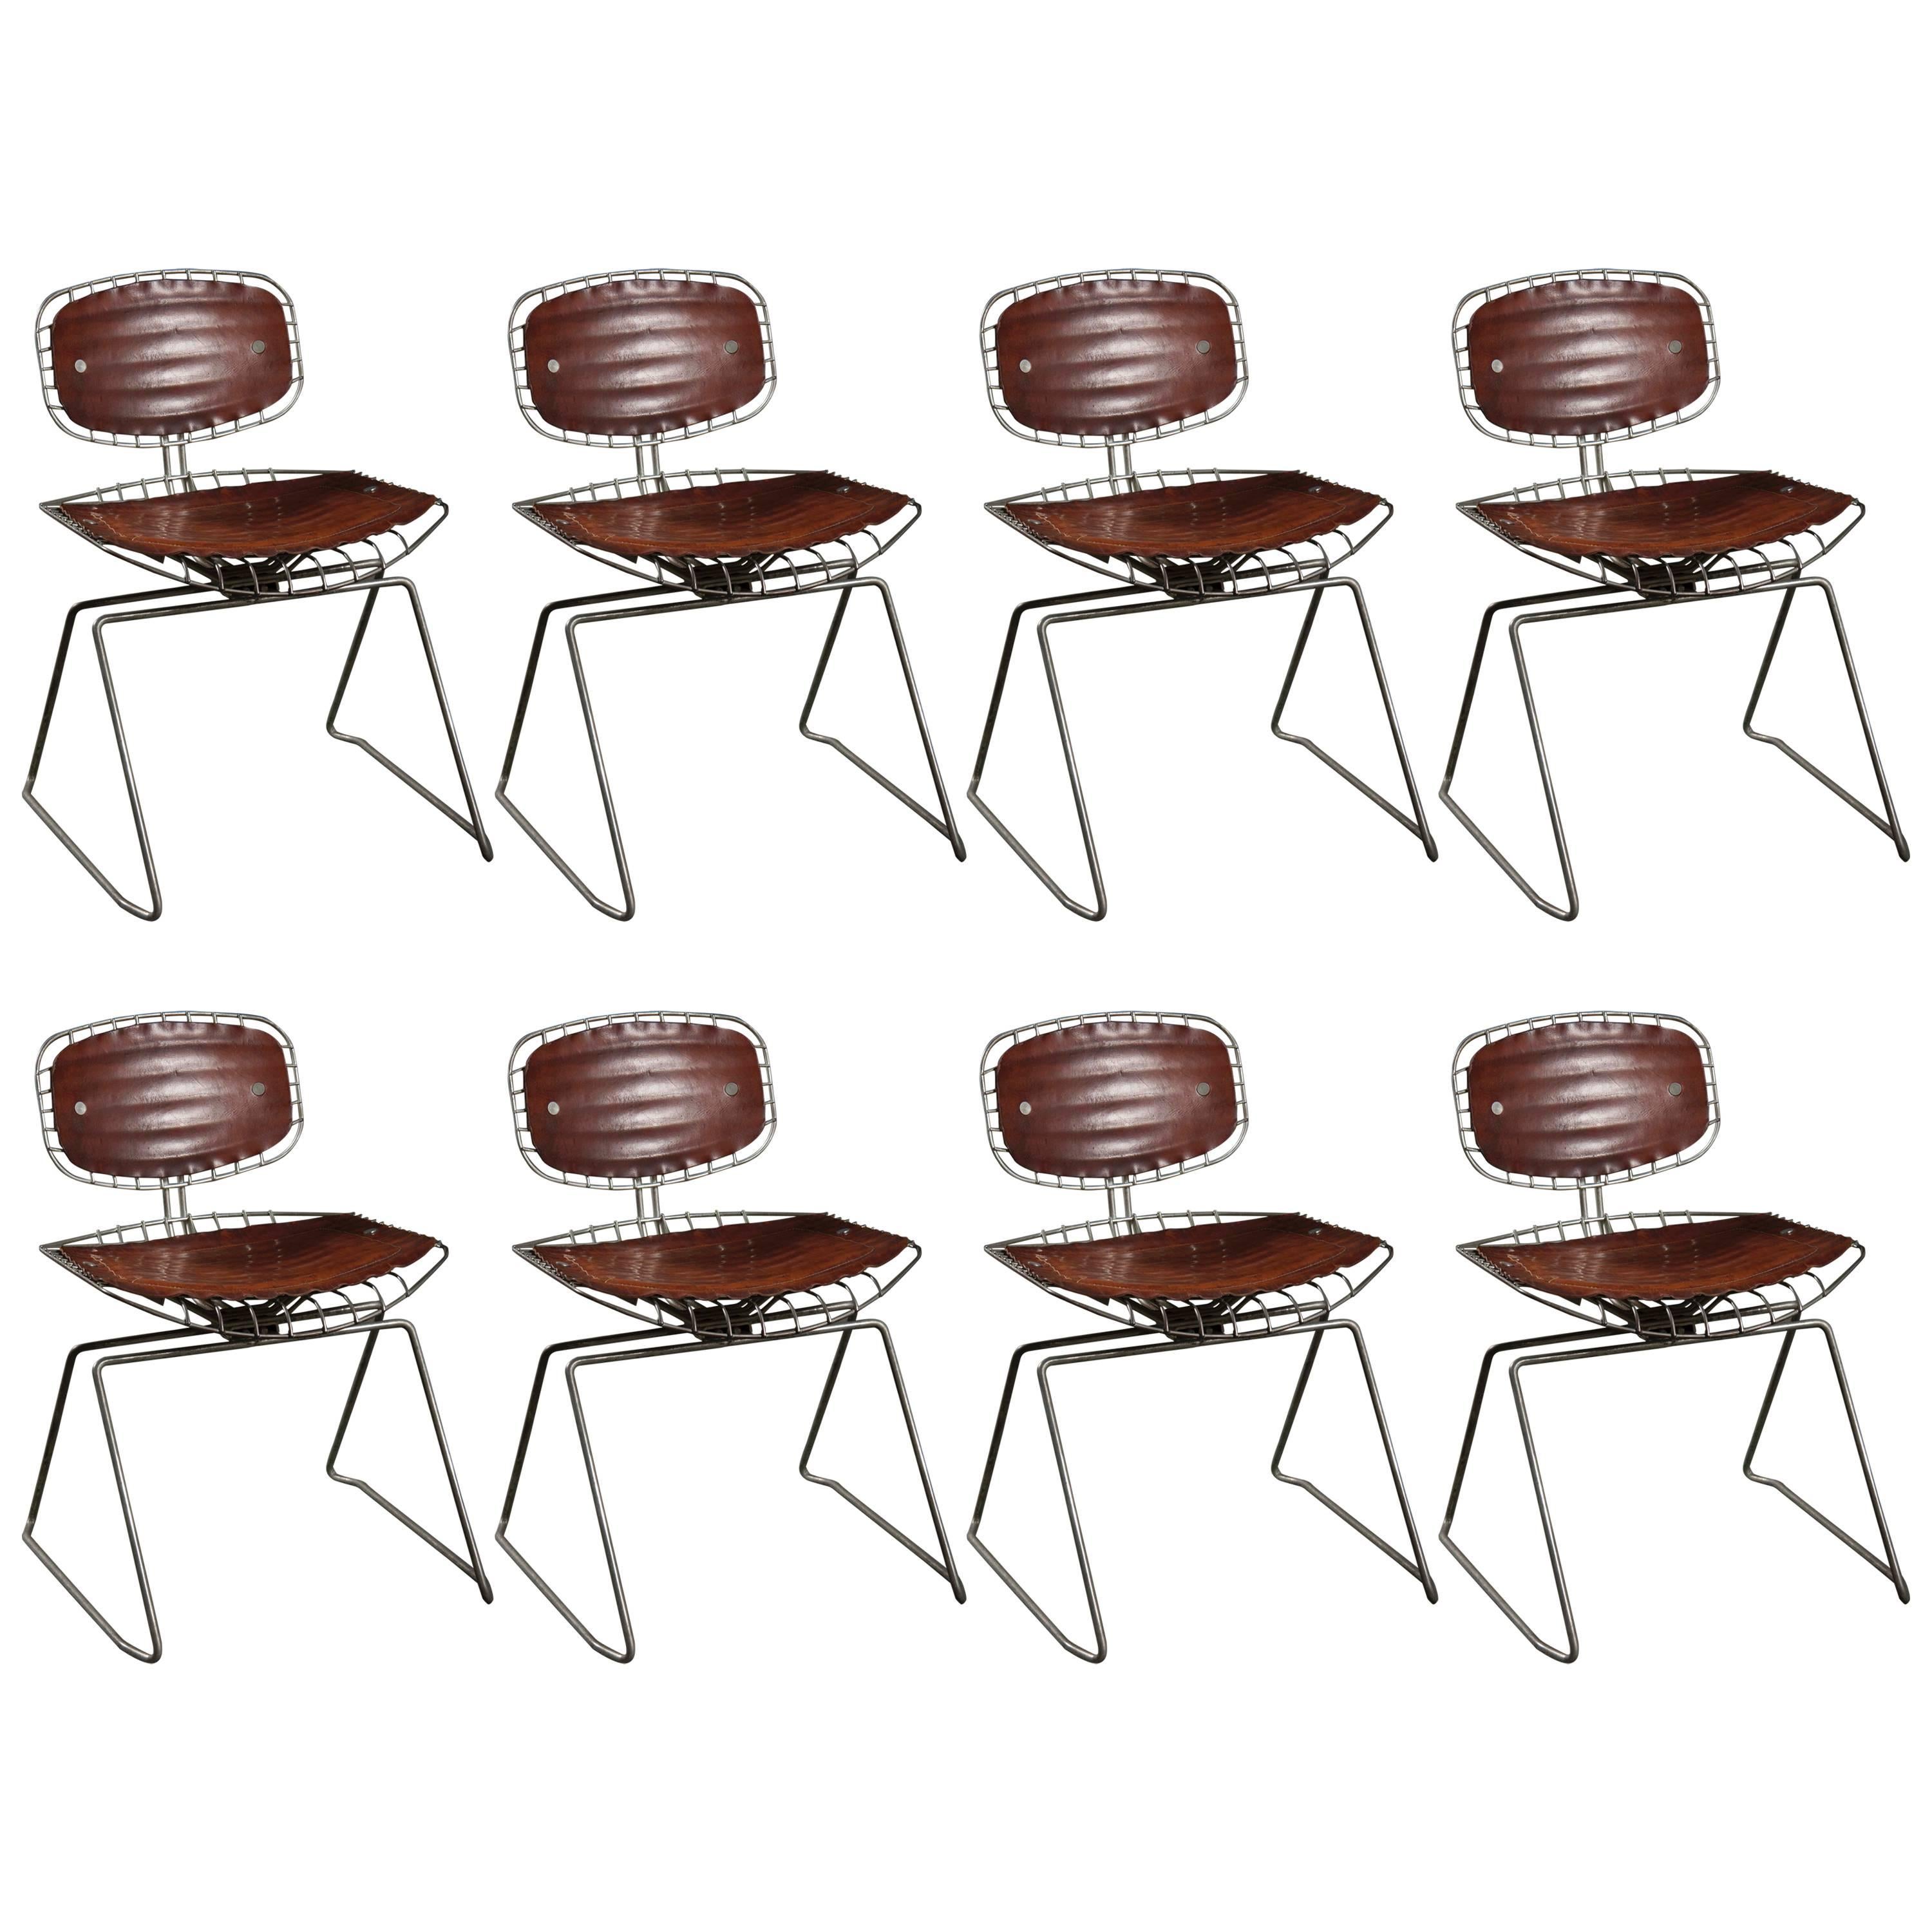 Ensemble de huit chaises Beaubourg conçues par Michel Cadestin et Georges Laurent